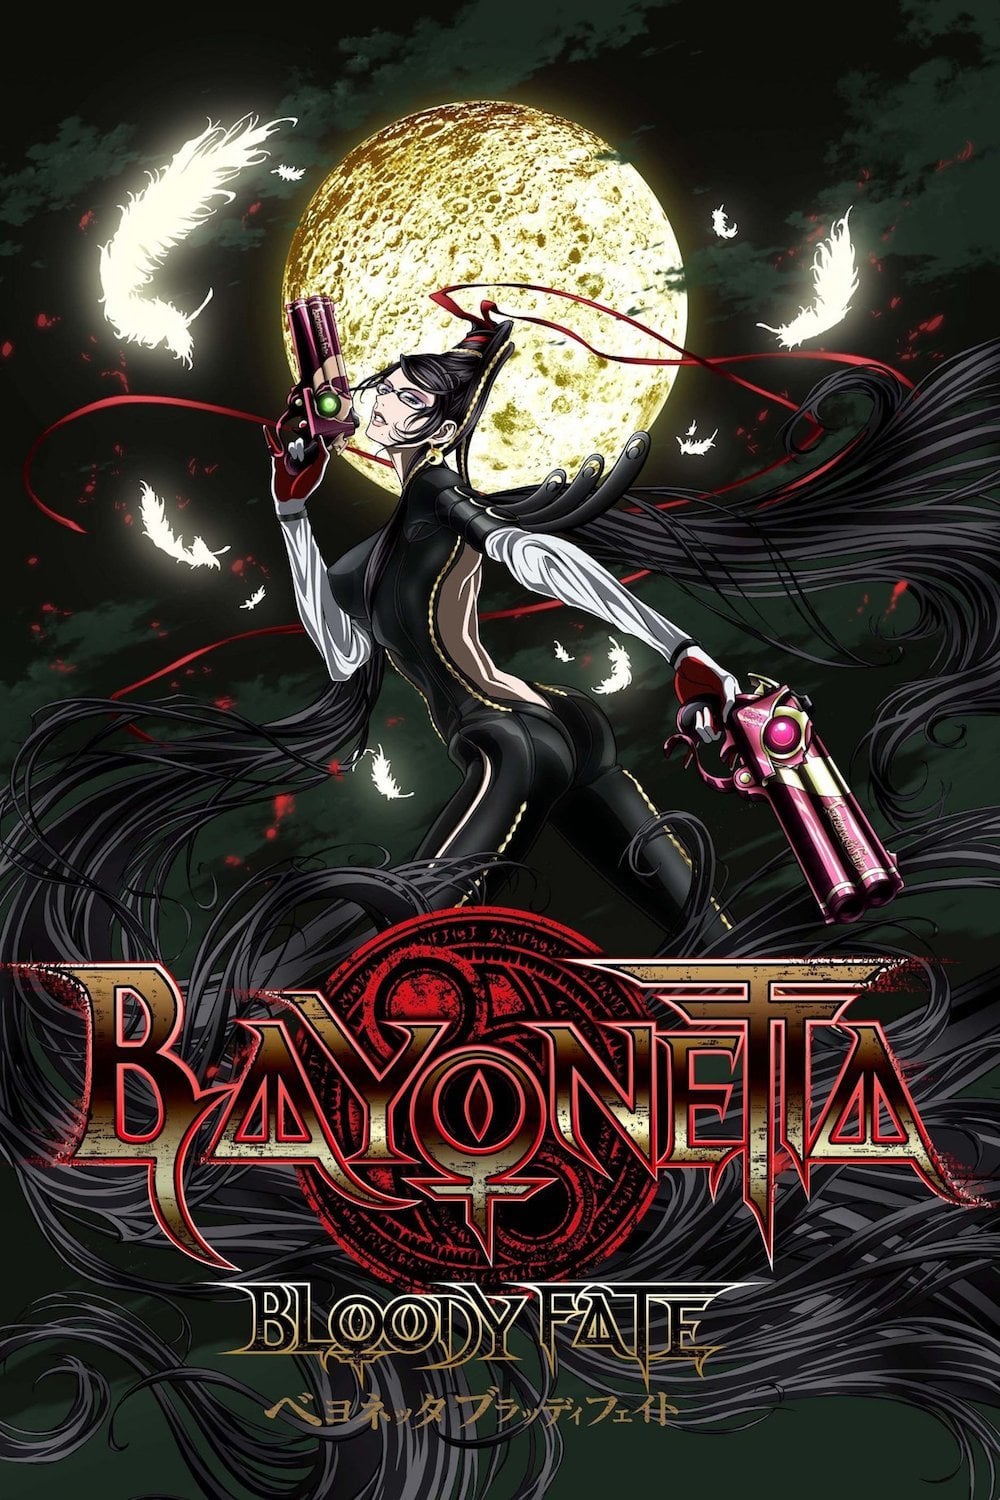 Plakat von "Bayonetta: Bloody Fate"